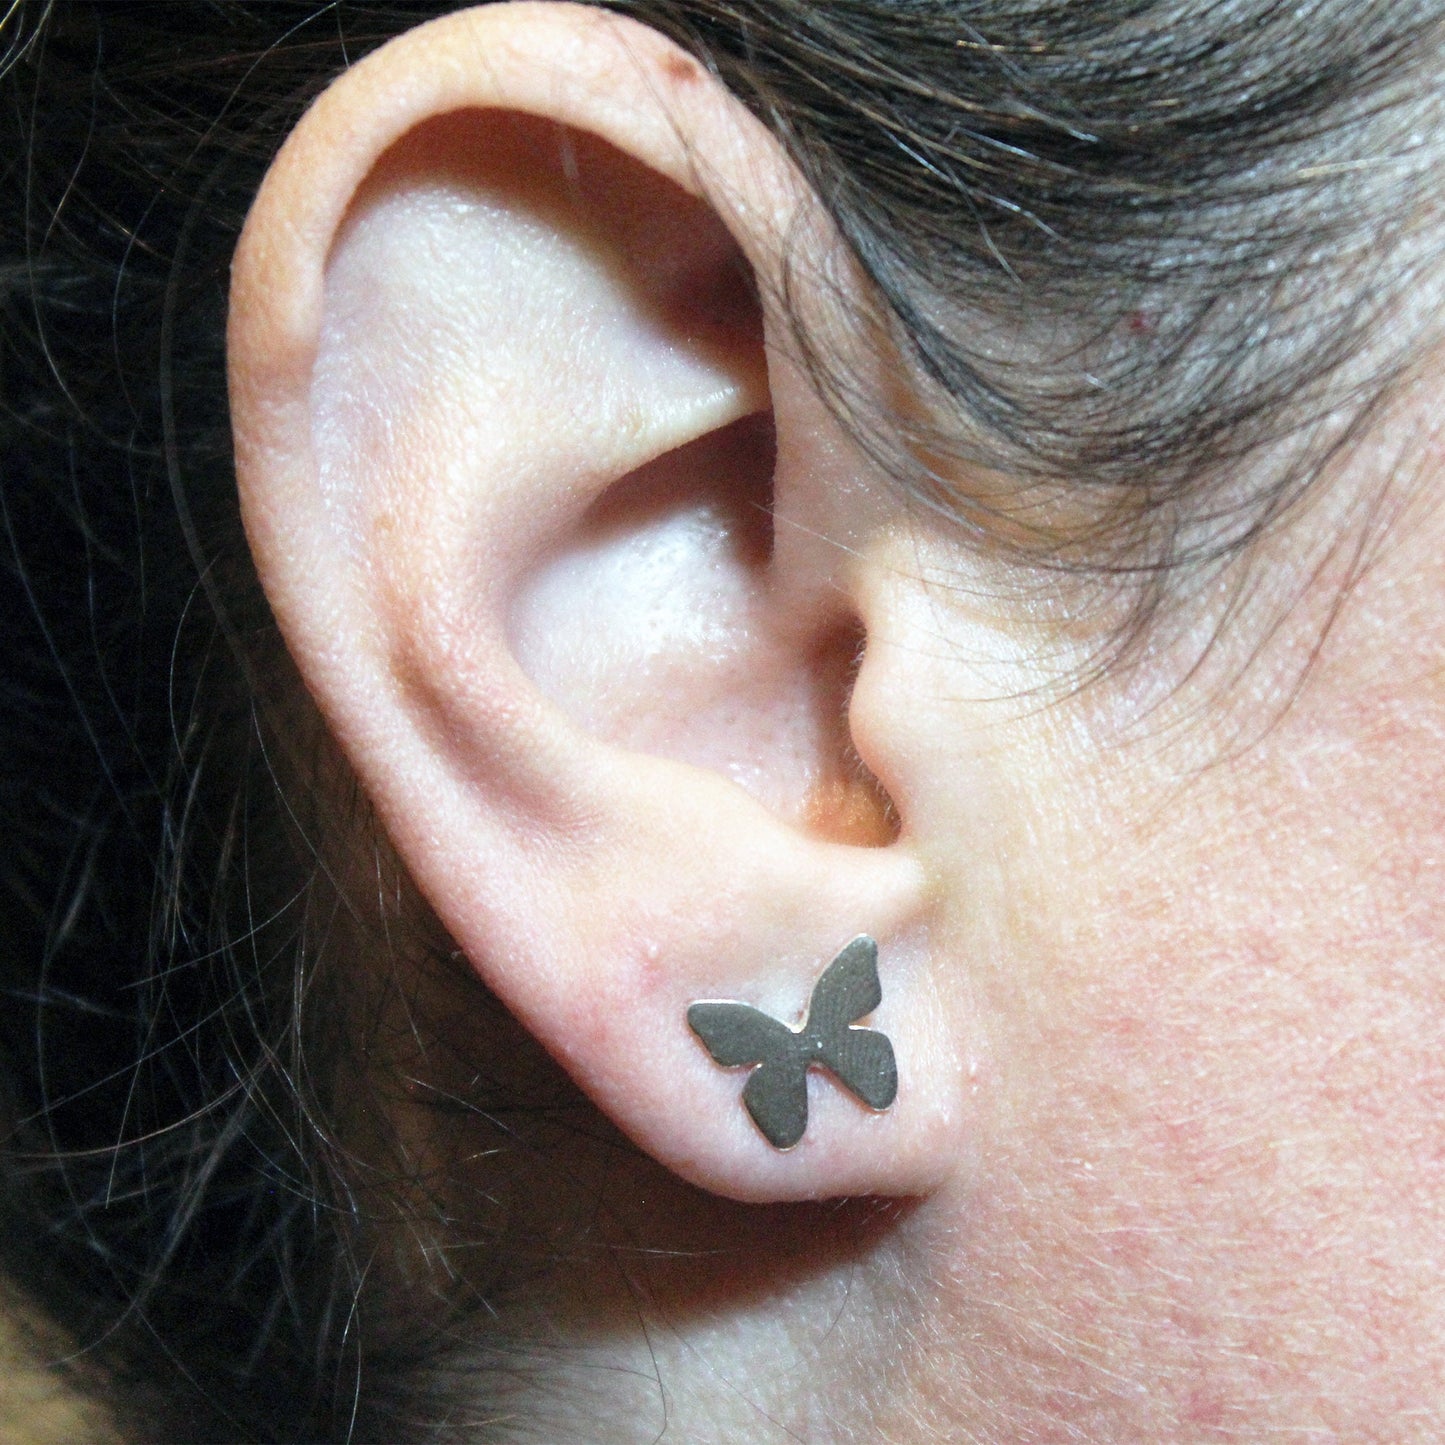 925 silver butterfly earrings